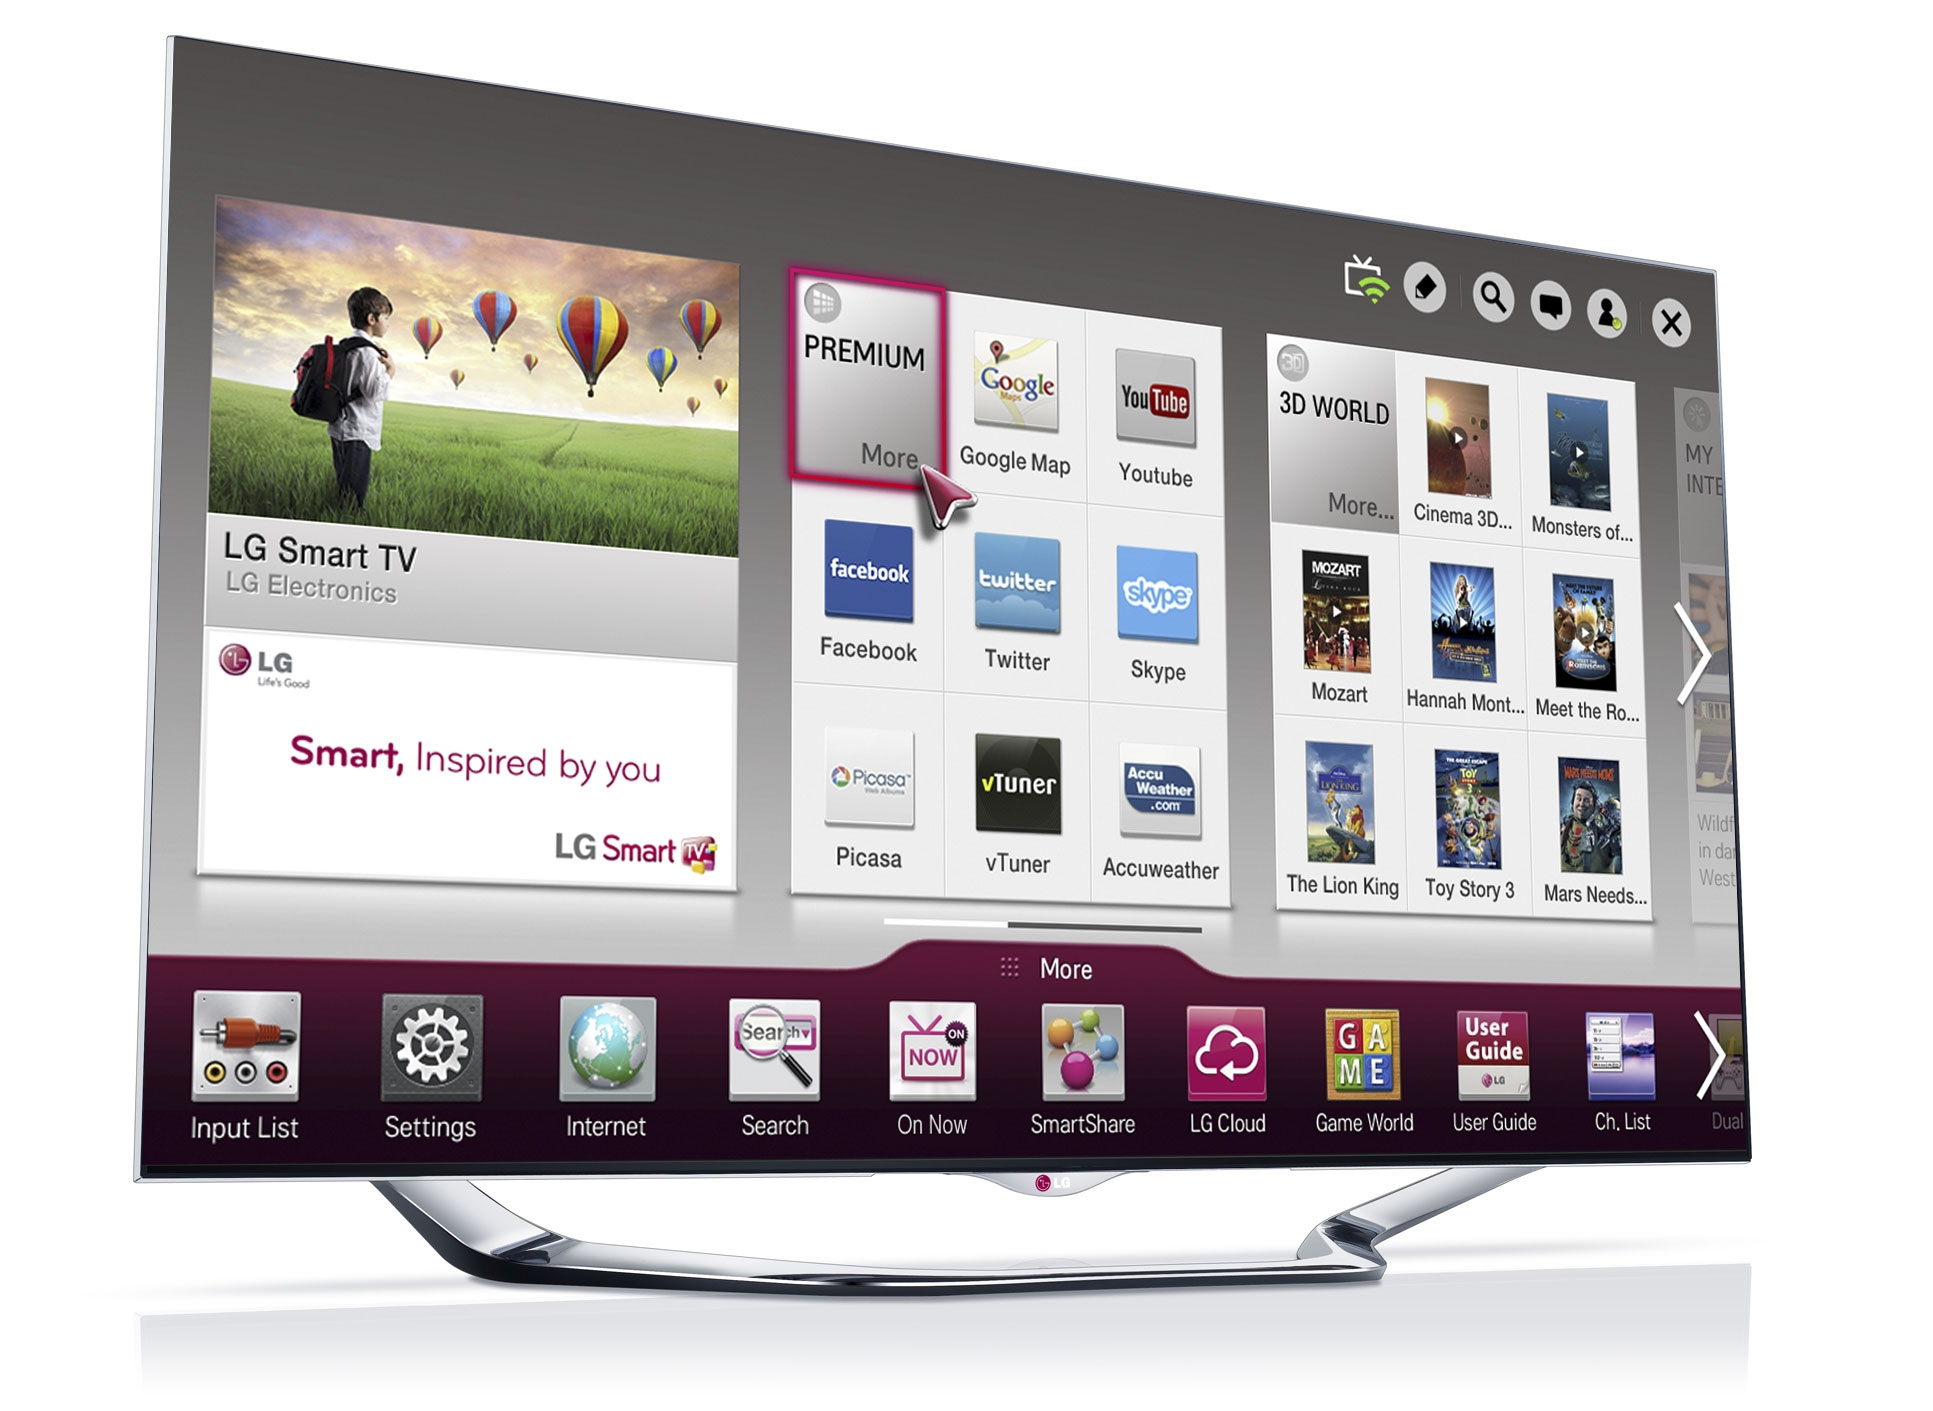 Specifications For LG s 2013 LED Smart TVs FlatpanelsHD